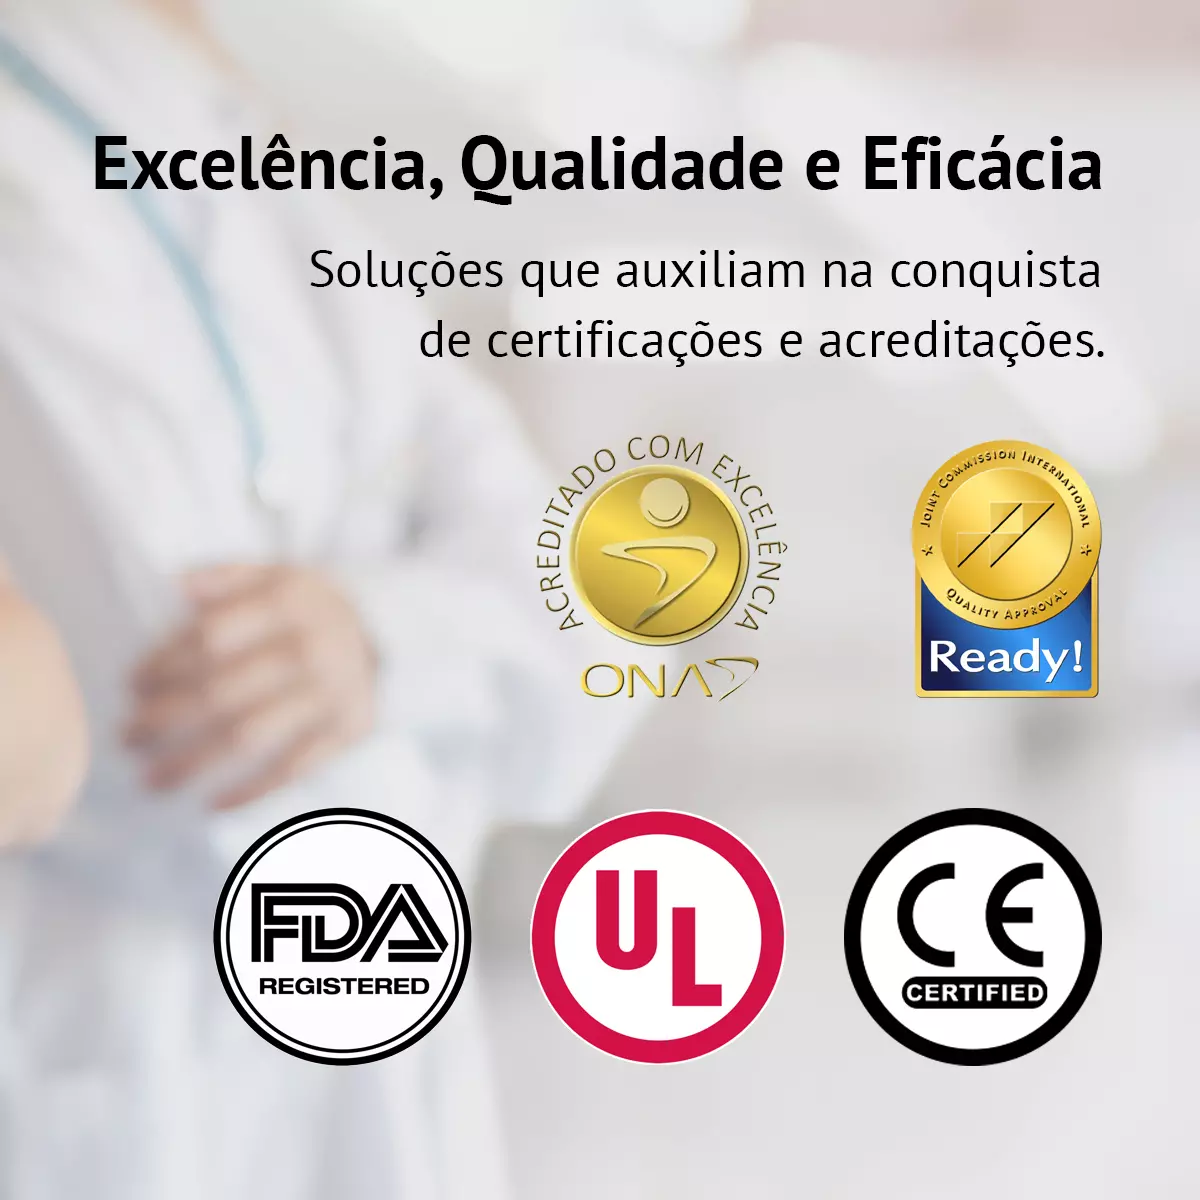 Certificações e acreditações, ONA, Joint Commission, FDA, UL e CE